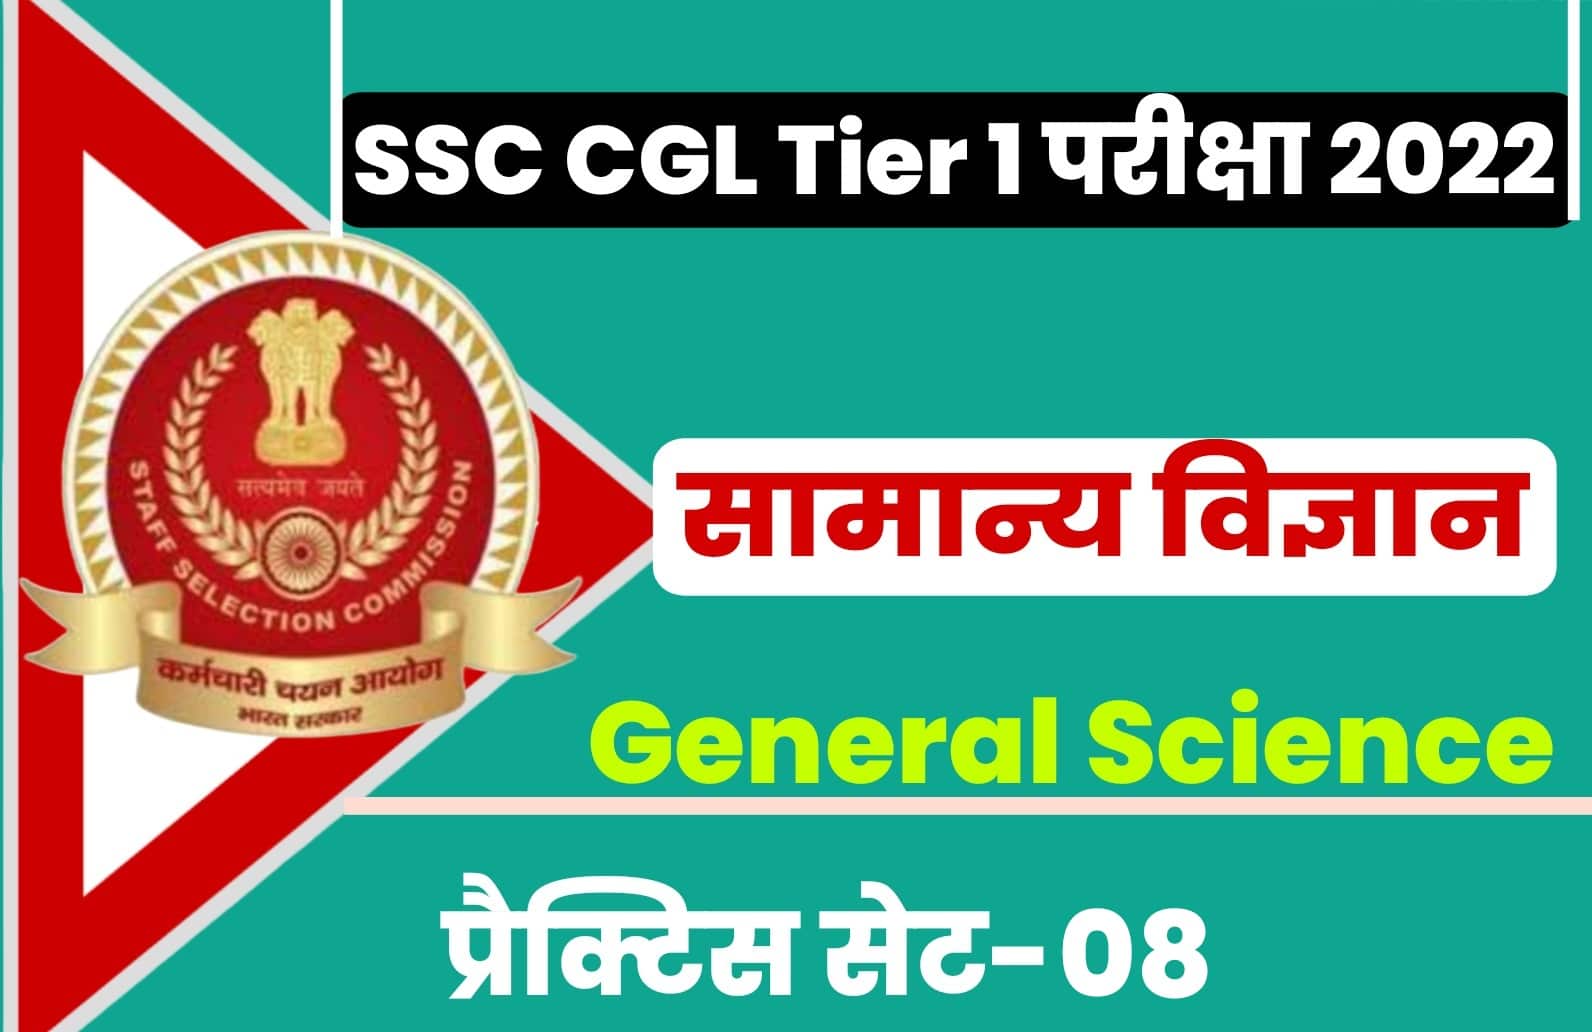 SSC CGL Tier I Exam 2022 General Science Practice Set 08 | परीक्षा में सफलता पाने के लिए अवश्य अध्ययन करें